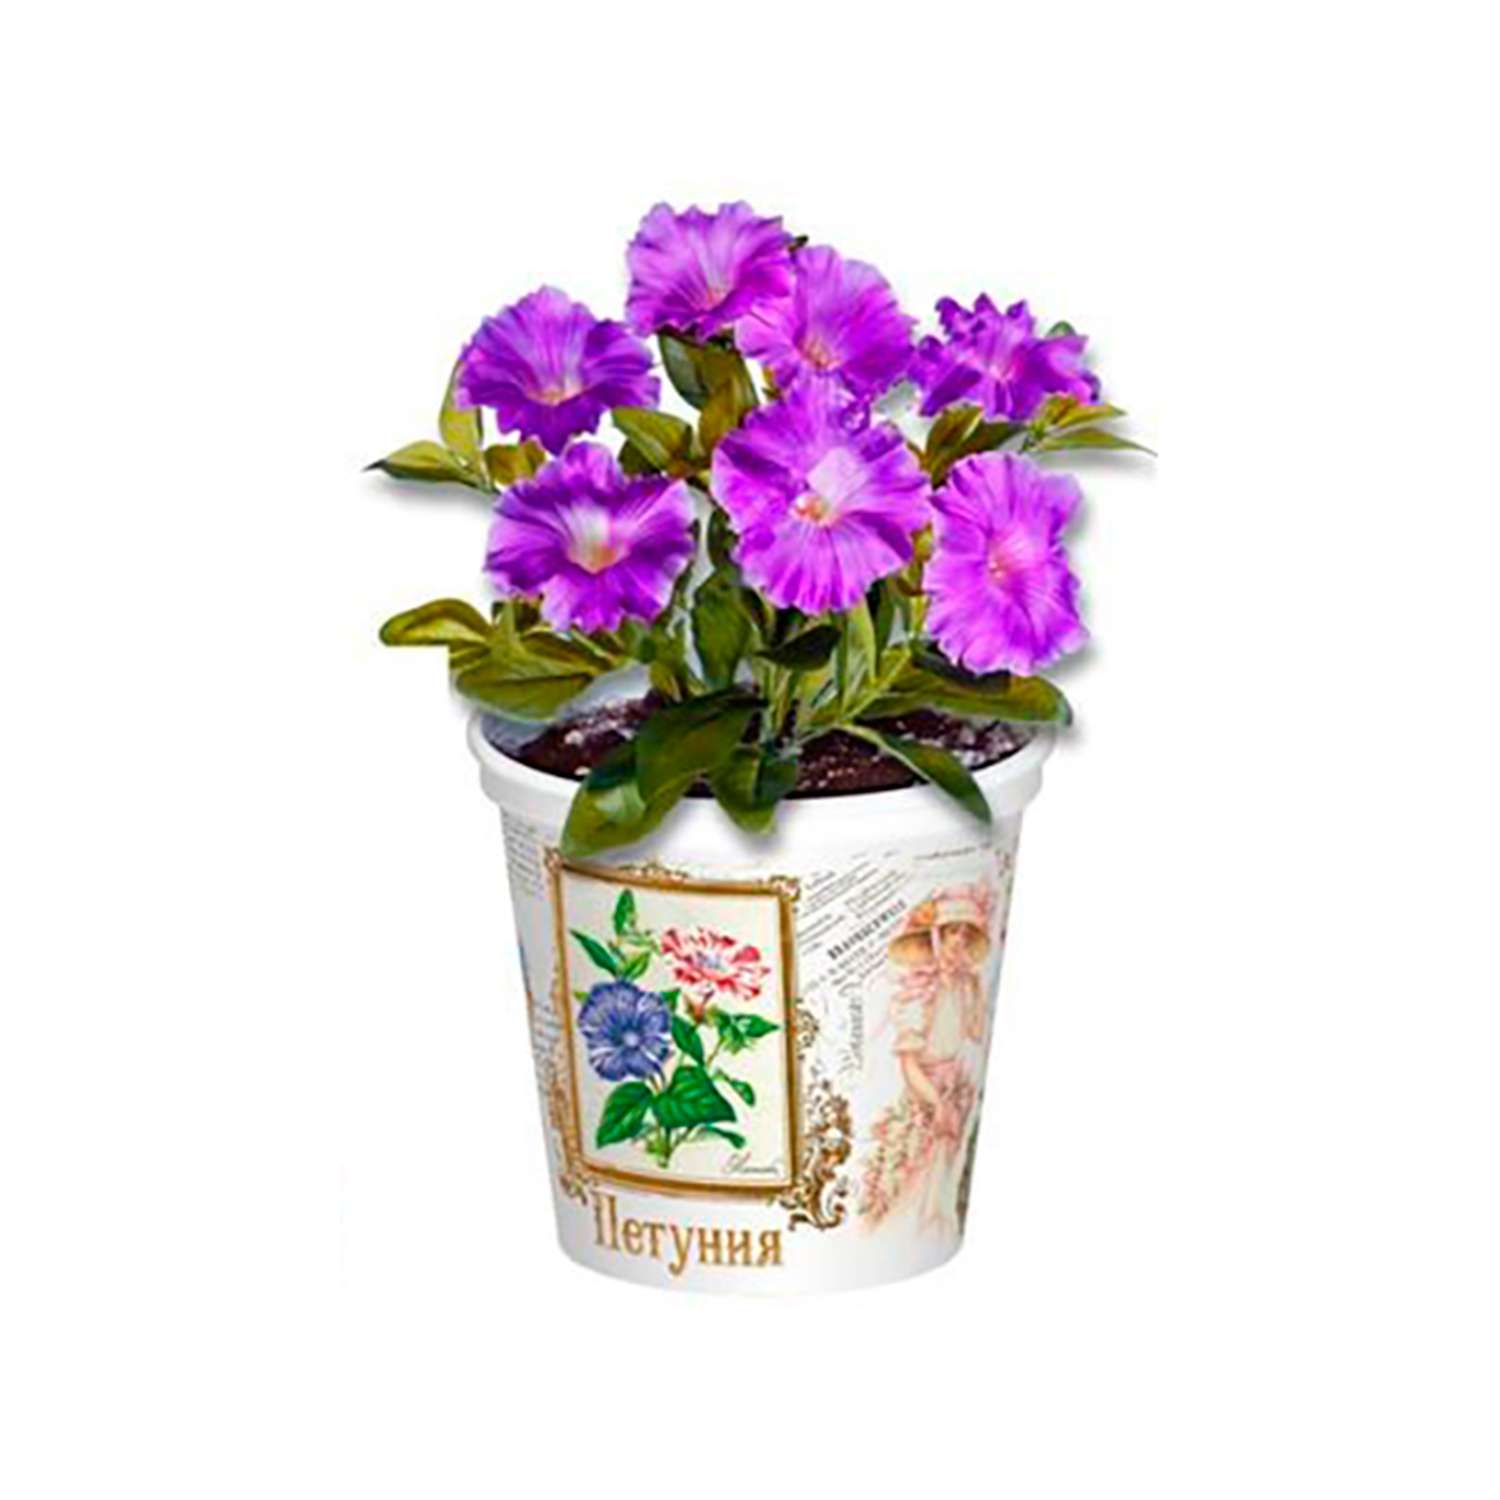 Набор для выращивания растений Rostok Visa Вырасти сам цветок Петуния в подарочном горшке - фото 5